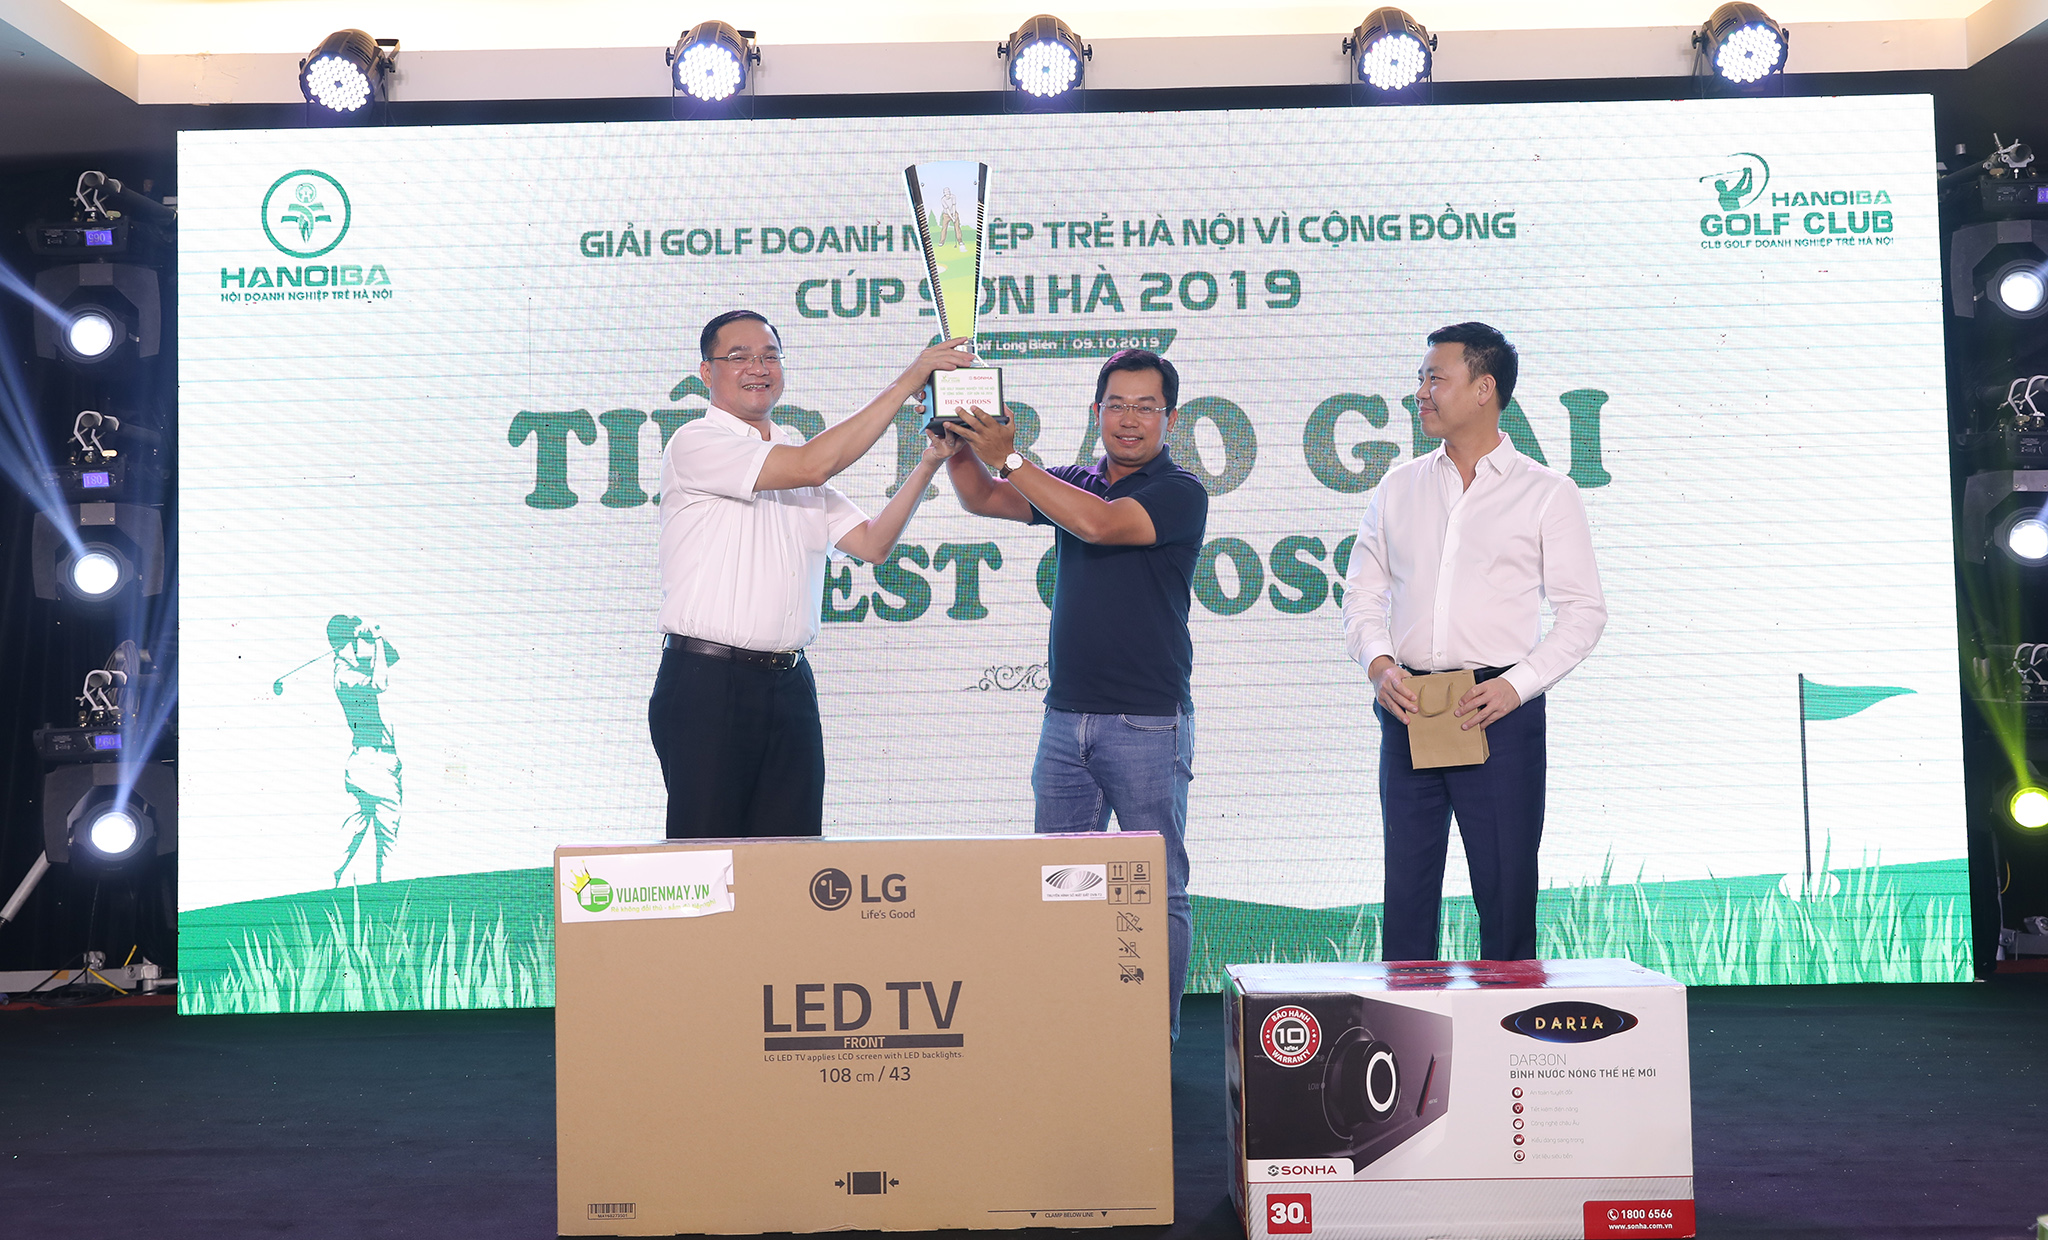 Golfer Phạm Lê Cường vô địch giải Golf Doanh nghiệp trẻ Hà Nội vì Cộng đồng - Cúp Sơn Hà 2019